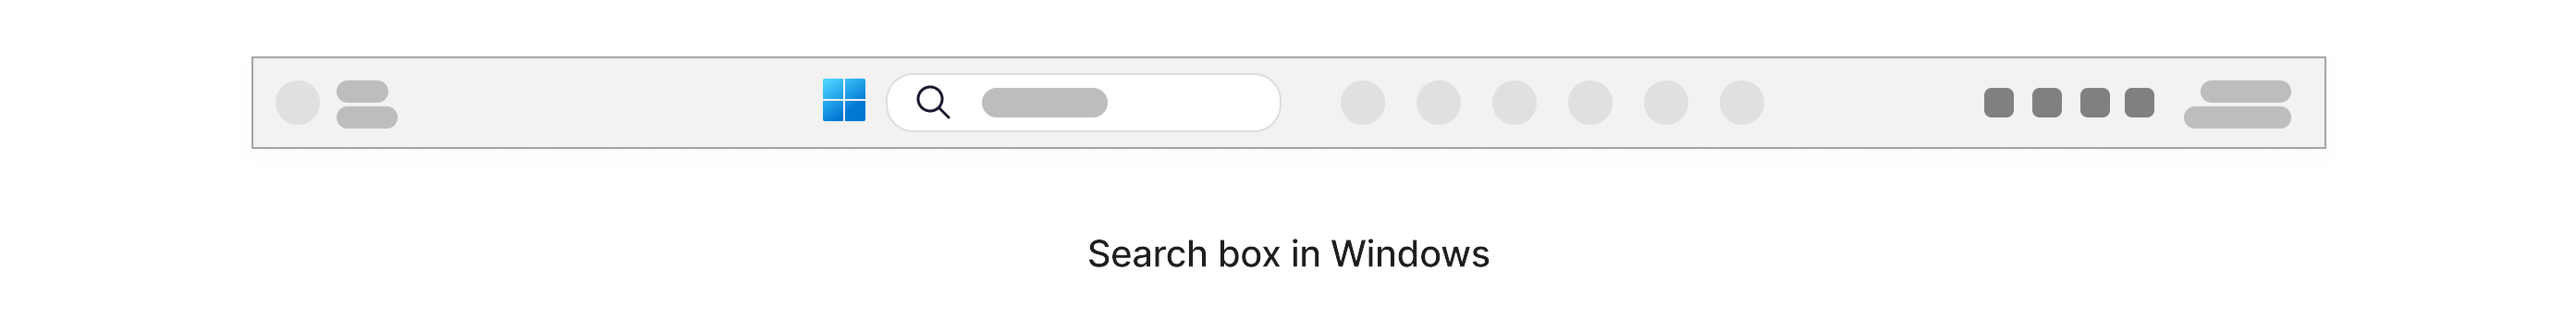 Polje za pretragu sa ikonom lupe u njemu koja se nalazi unutar Windows trake zadataka na dnu ekrana.